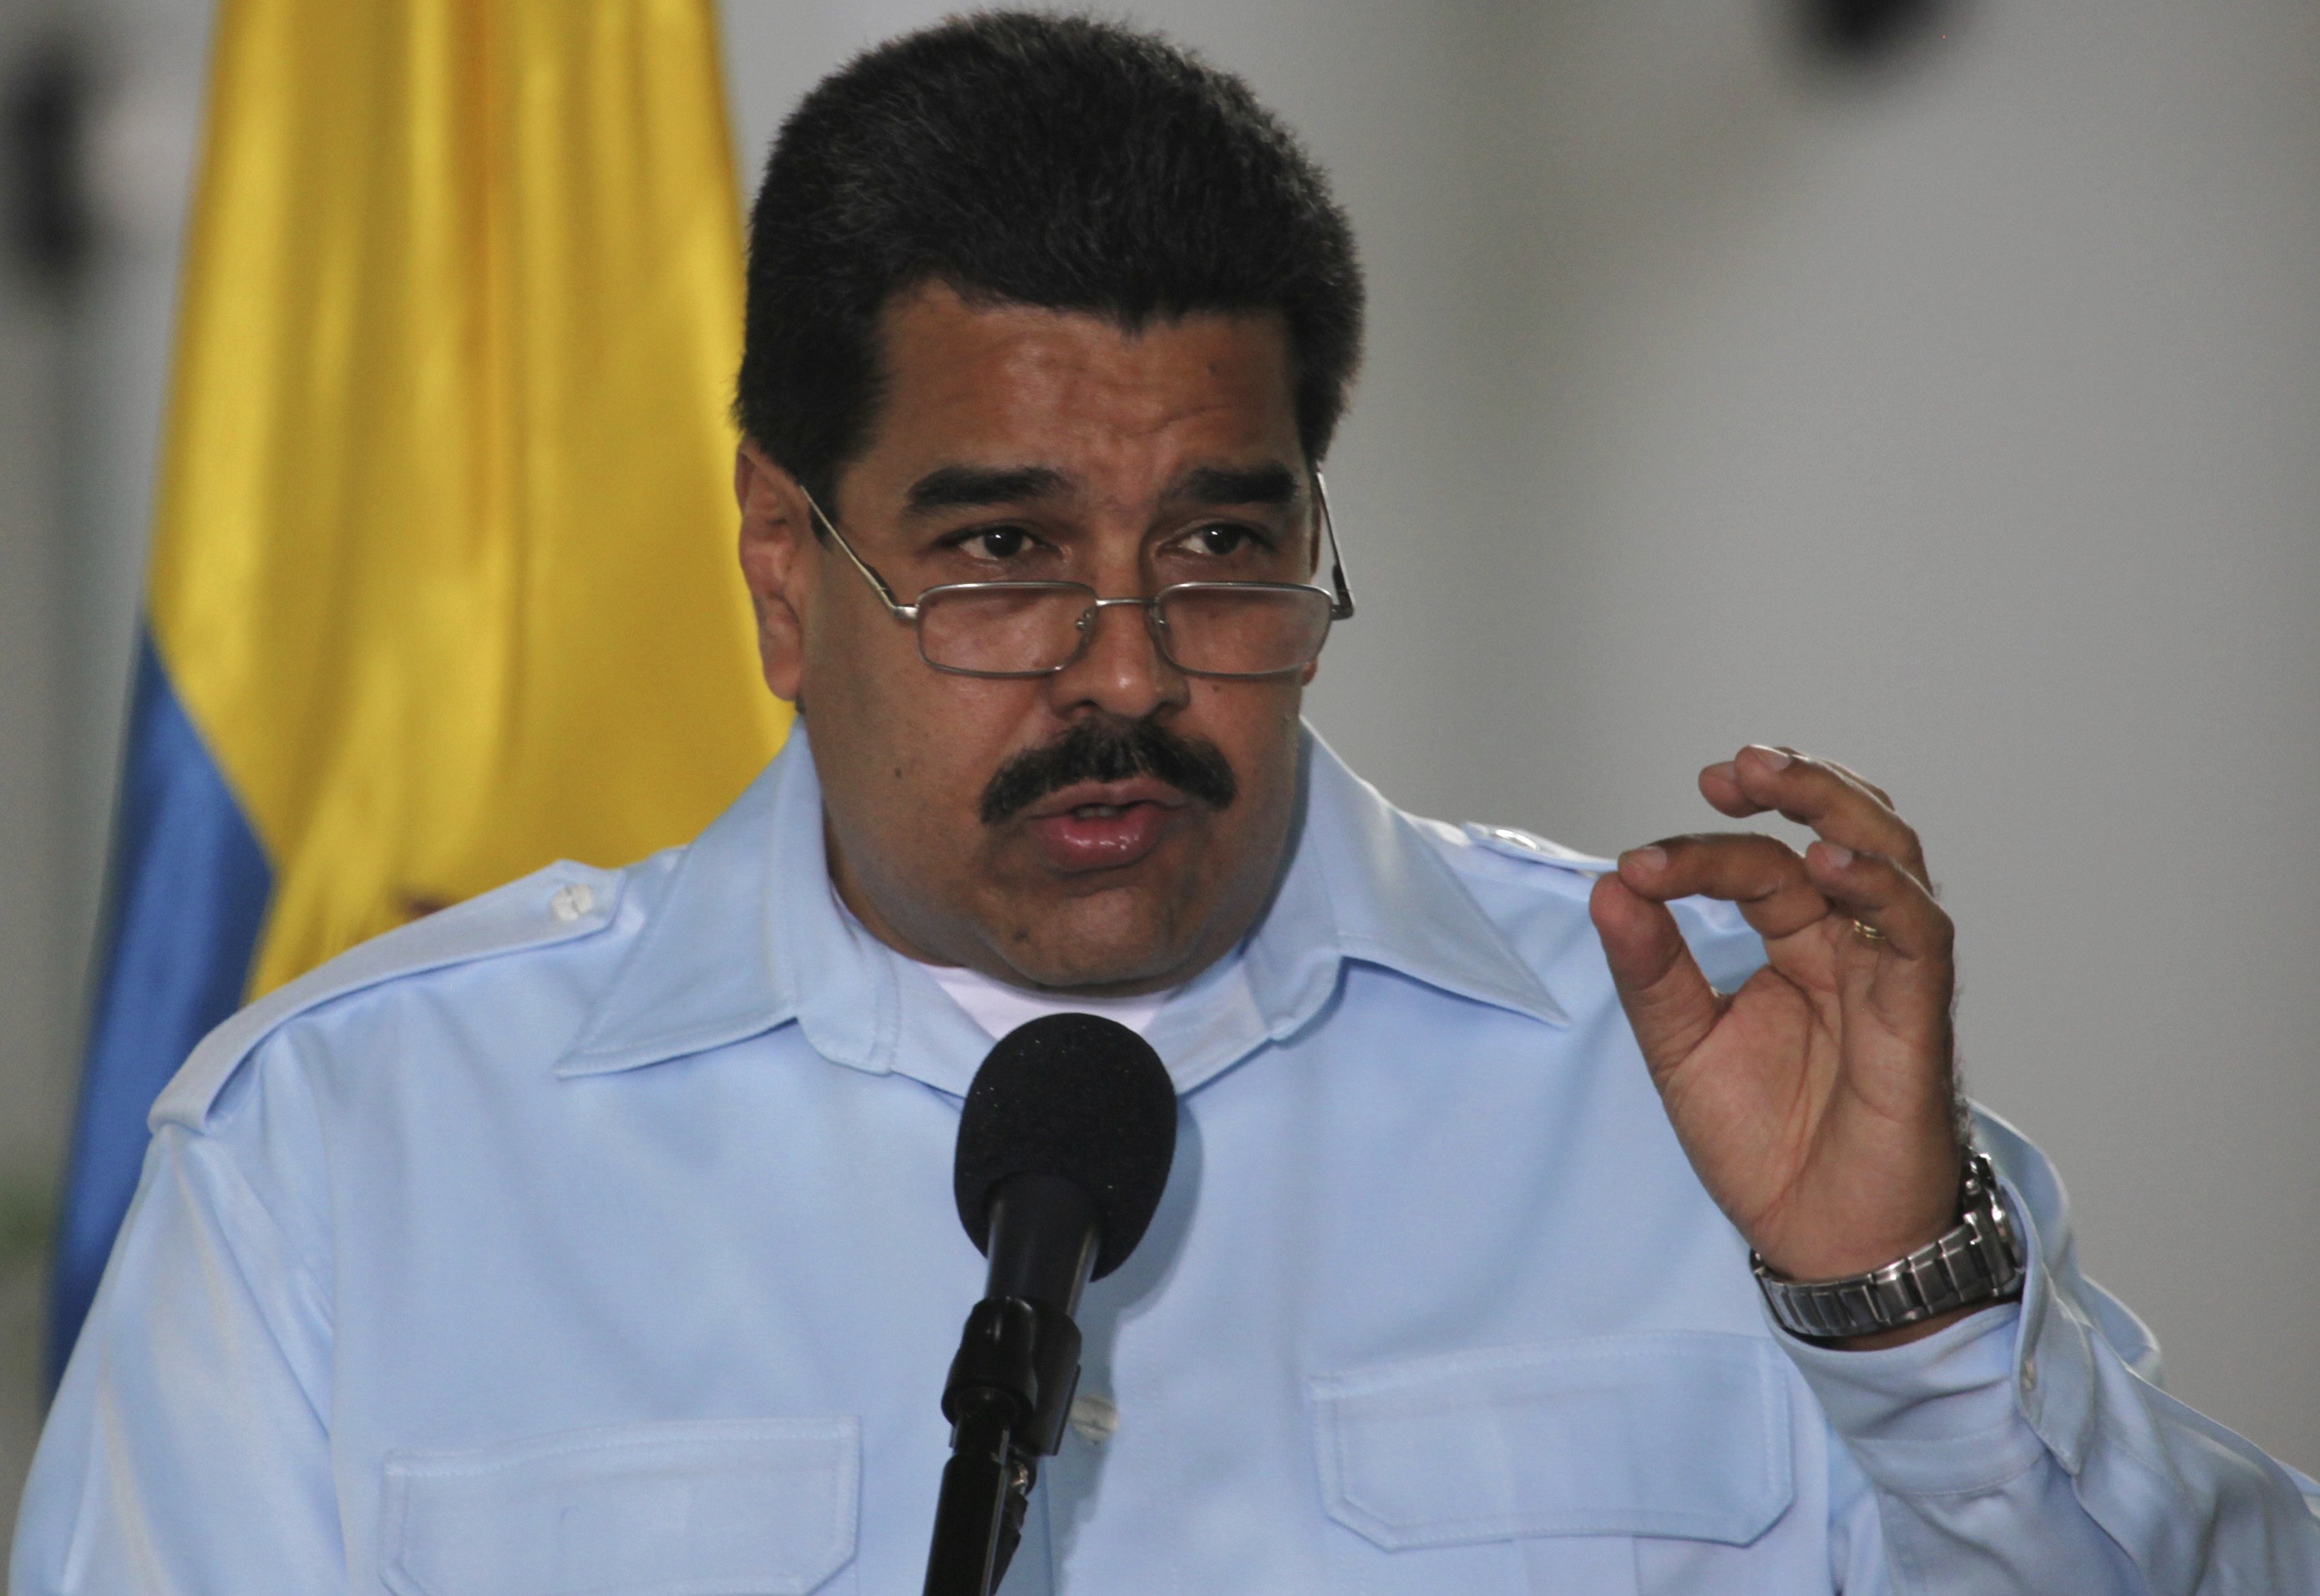 Gobierno de Nicolás Maduro: Un desatino económico